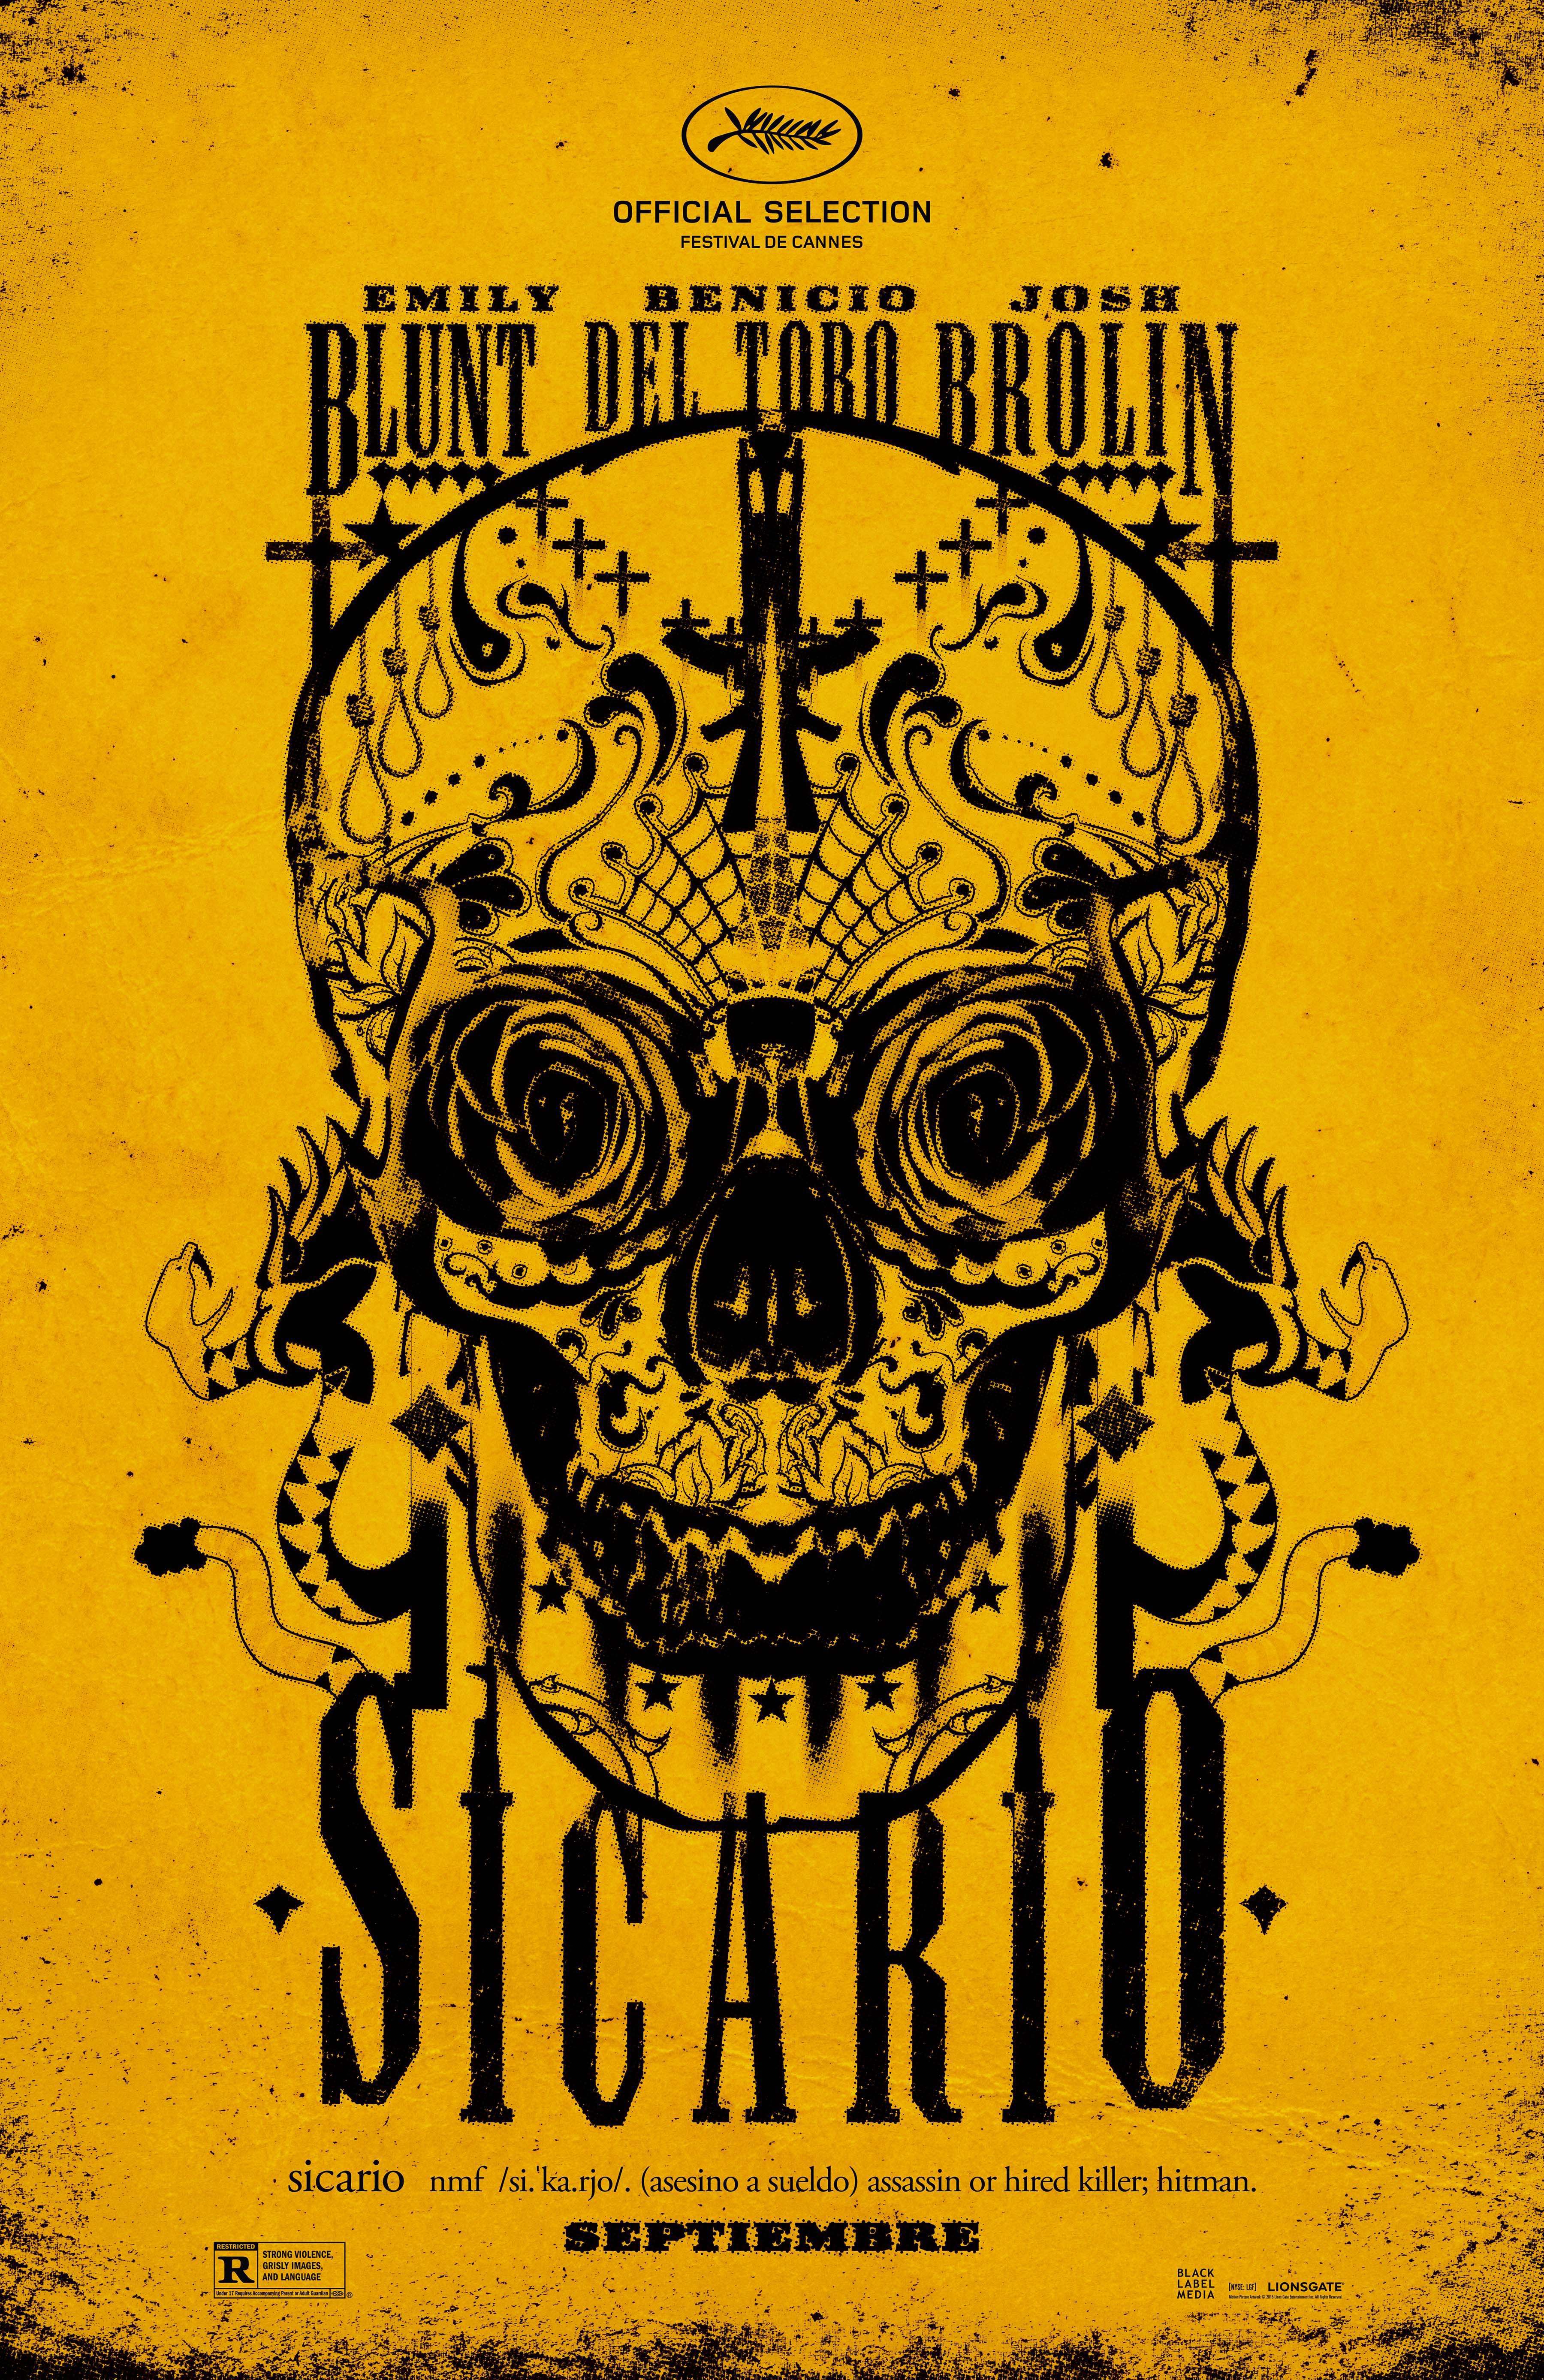 sicario-movie-poster - Albuquerque Studios